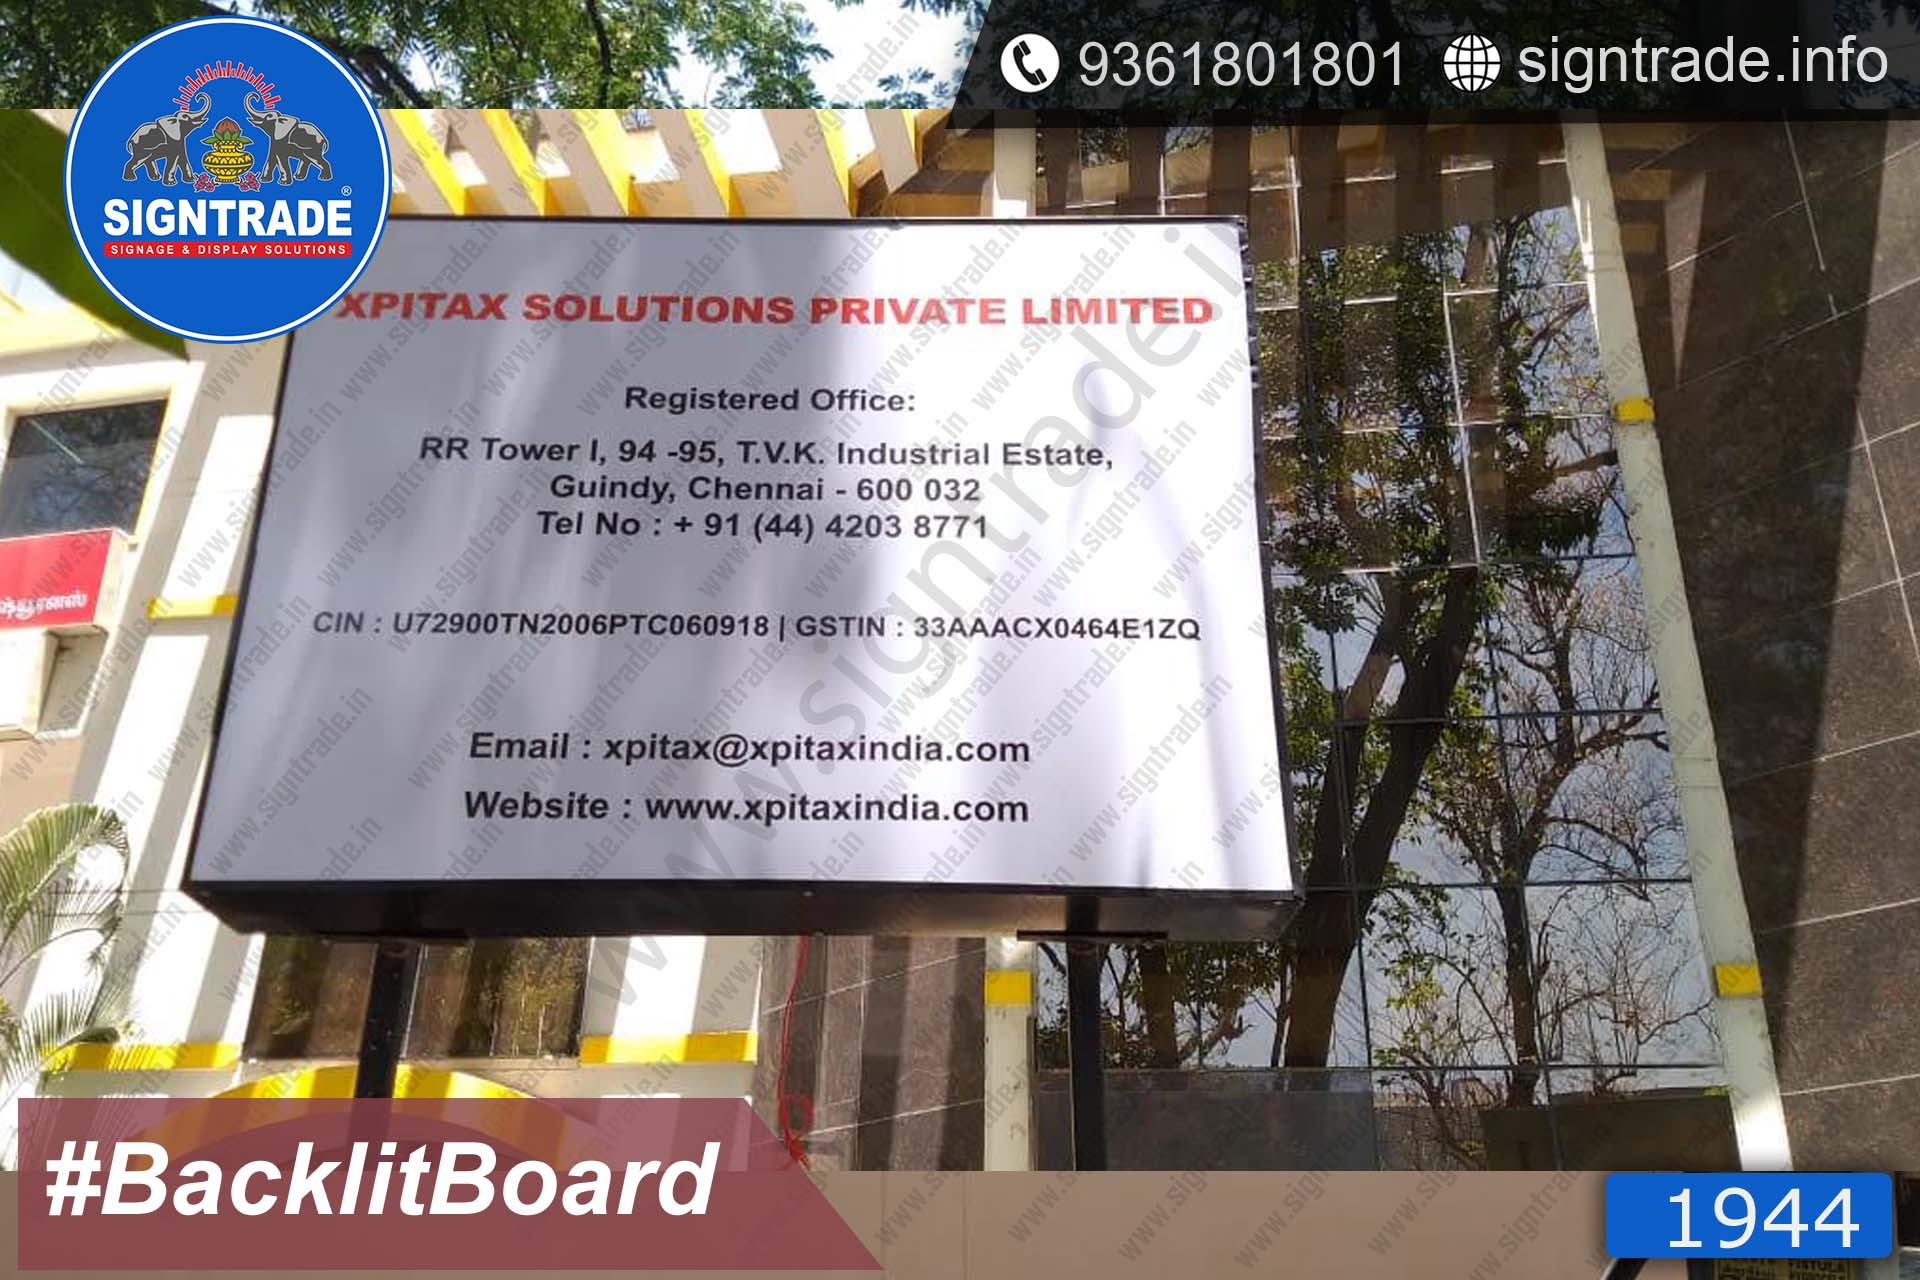 xpitax solutions pvt ltd backlit board